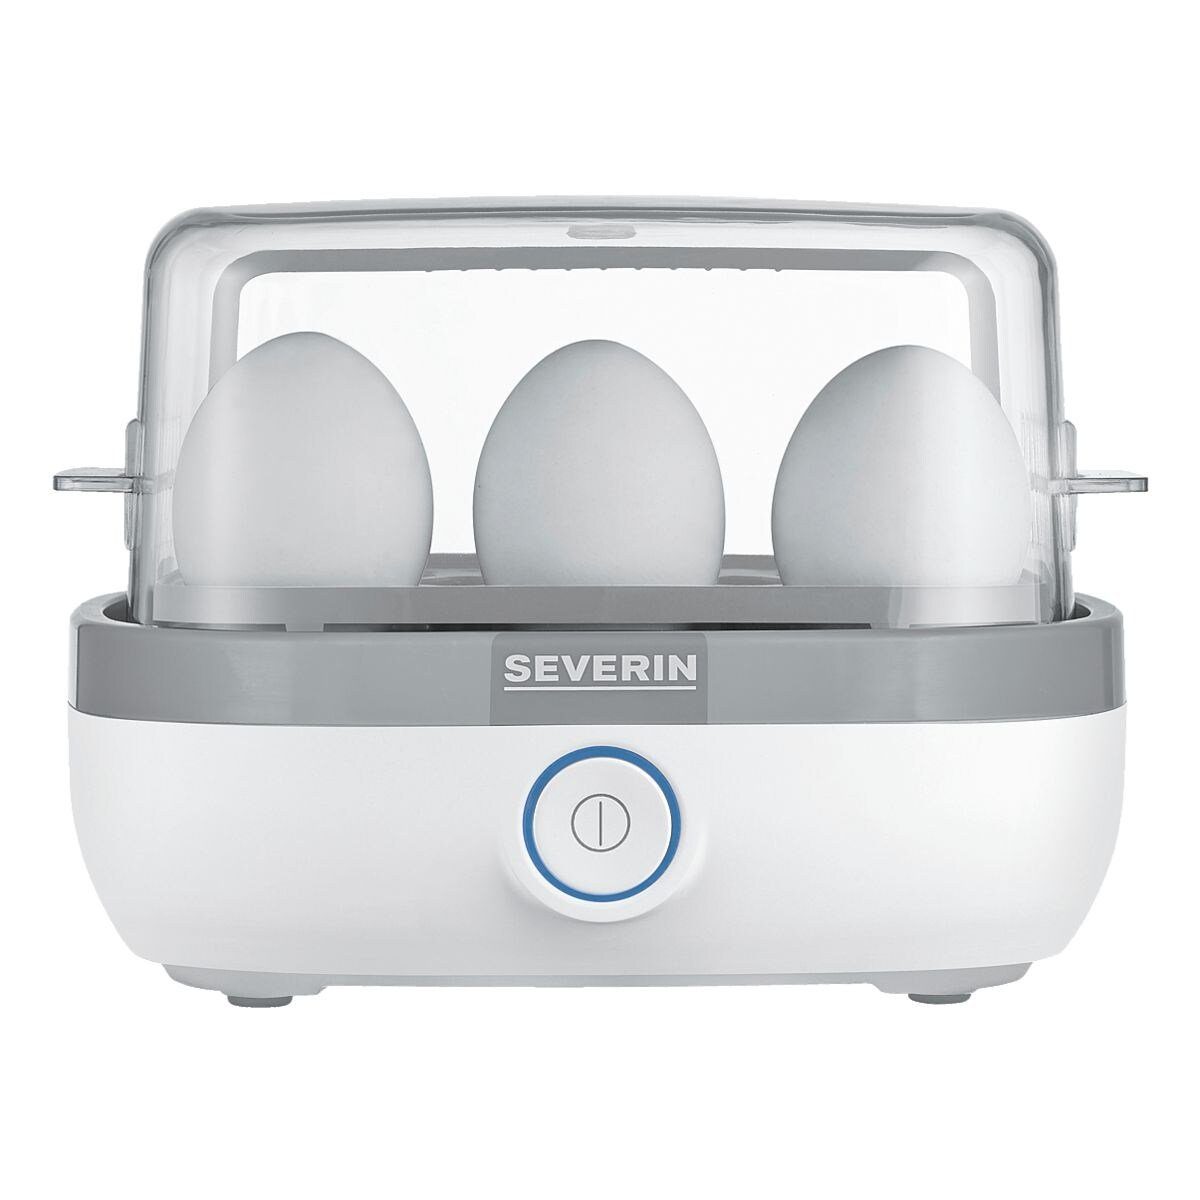 EK 6 für mit Eier, Kochzeitüberwachung, W elektronischer 420 W, Eierkocher Severin 3164, 420